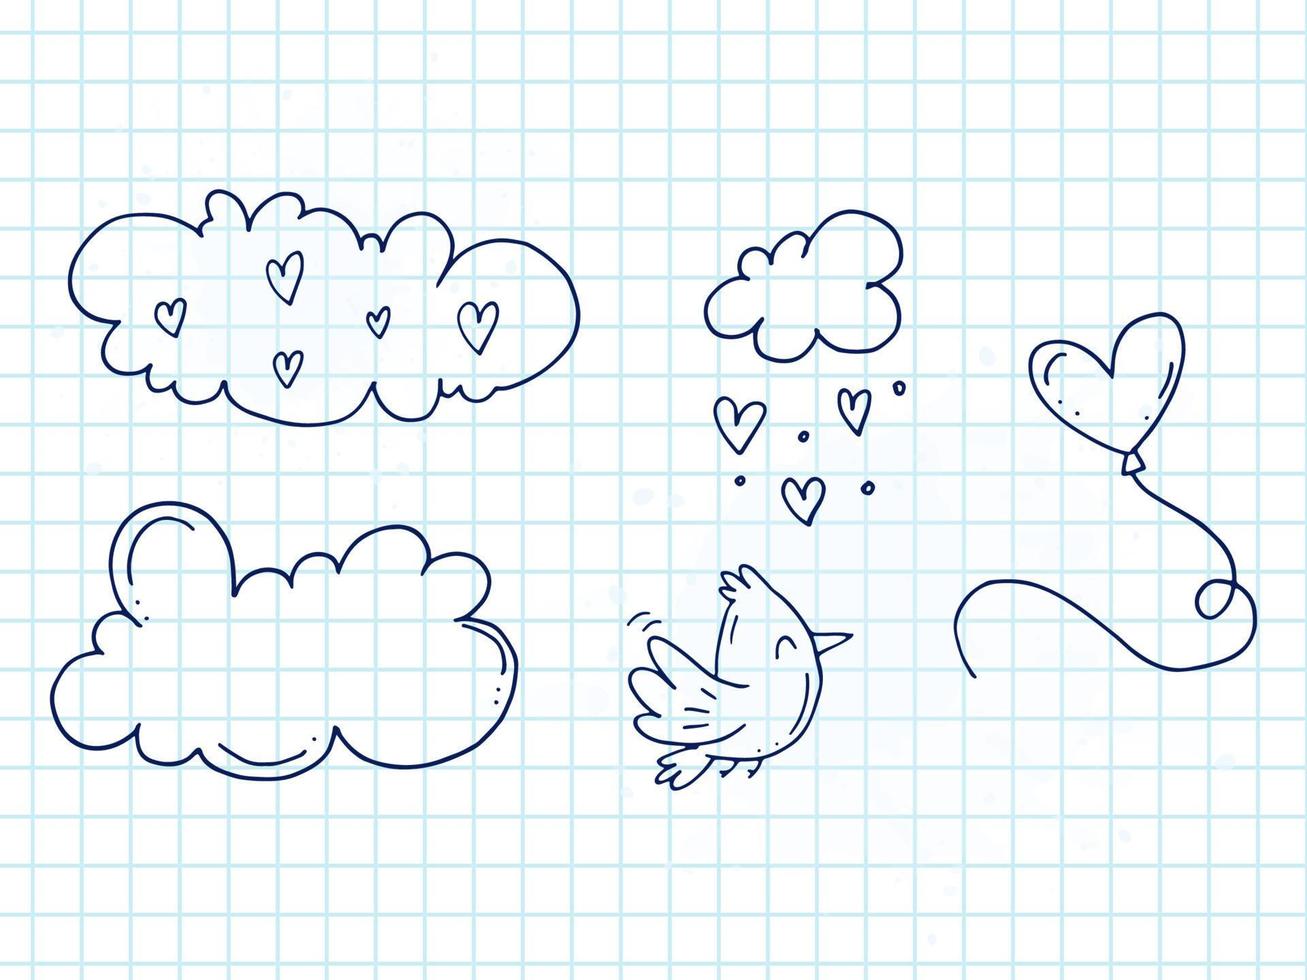 ensemble d'éléments de doodle mignons dessinés à la main sur l'amour. autocollants de message pour les applications. icônes pour la saint valentin, les événements romantiques et le mariage. un cahier à carreaux. un oiseau avec un ballon dans le ciel avec des nuages. vecteur